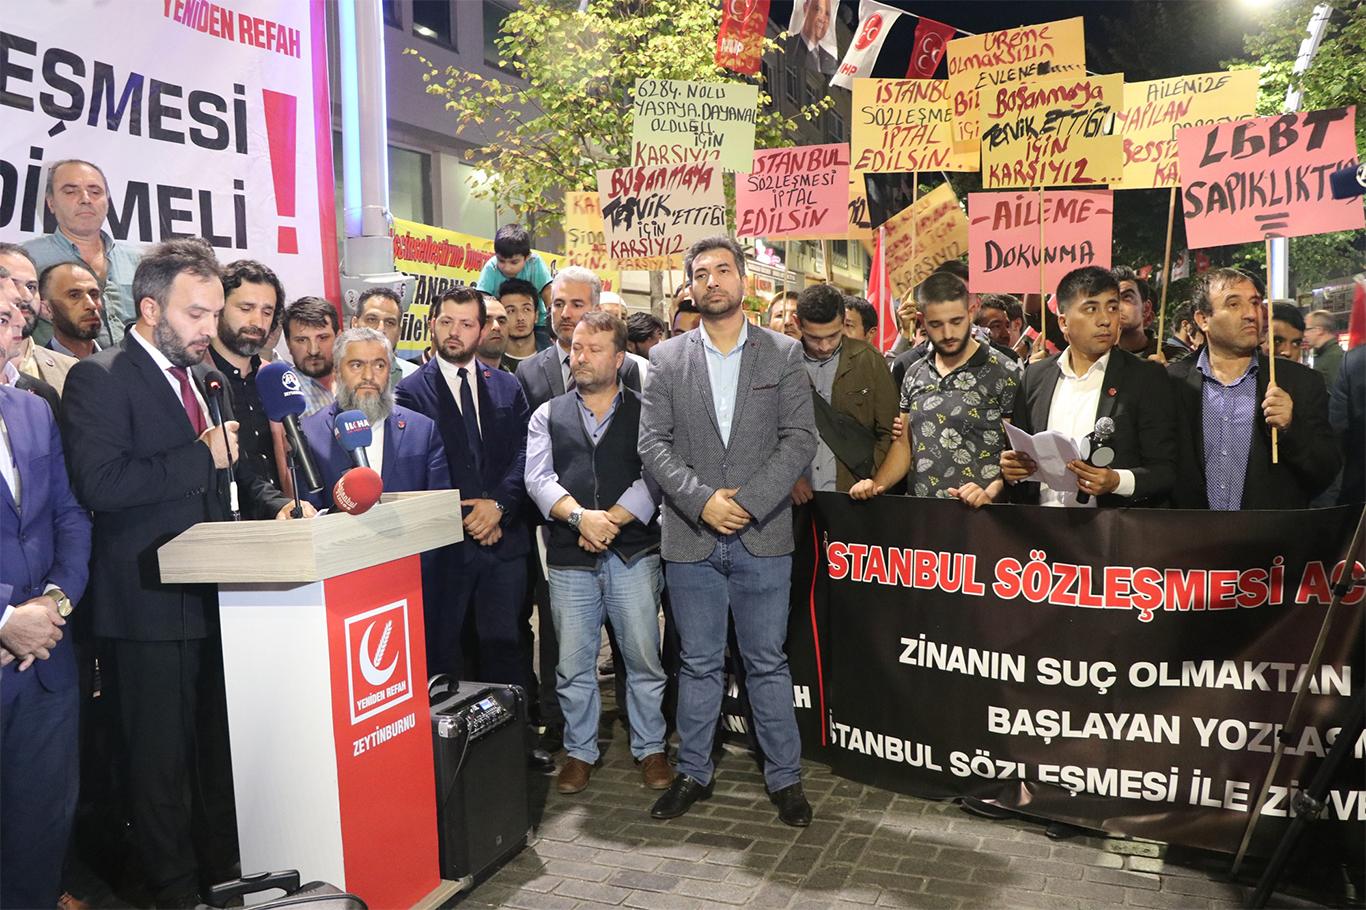 "İstanbul Sözleşmesi aile yapımıza karşı bir darbe girişimidir"